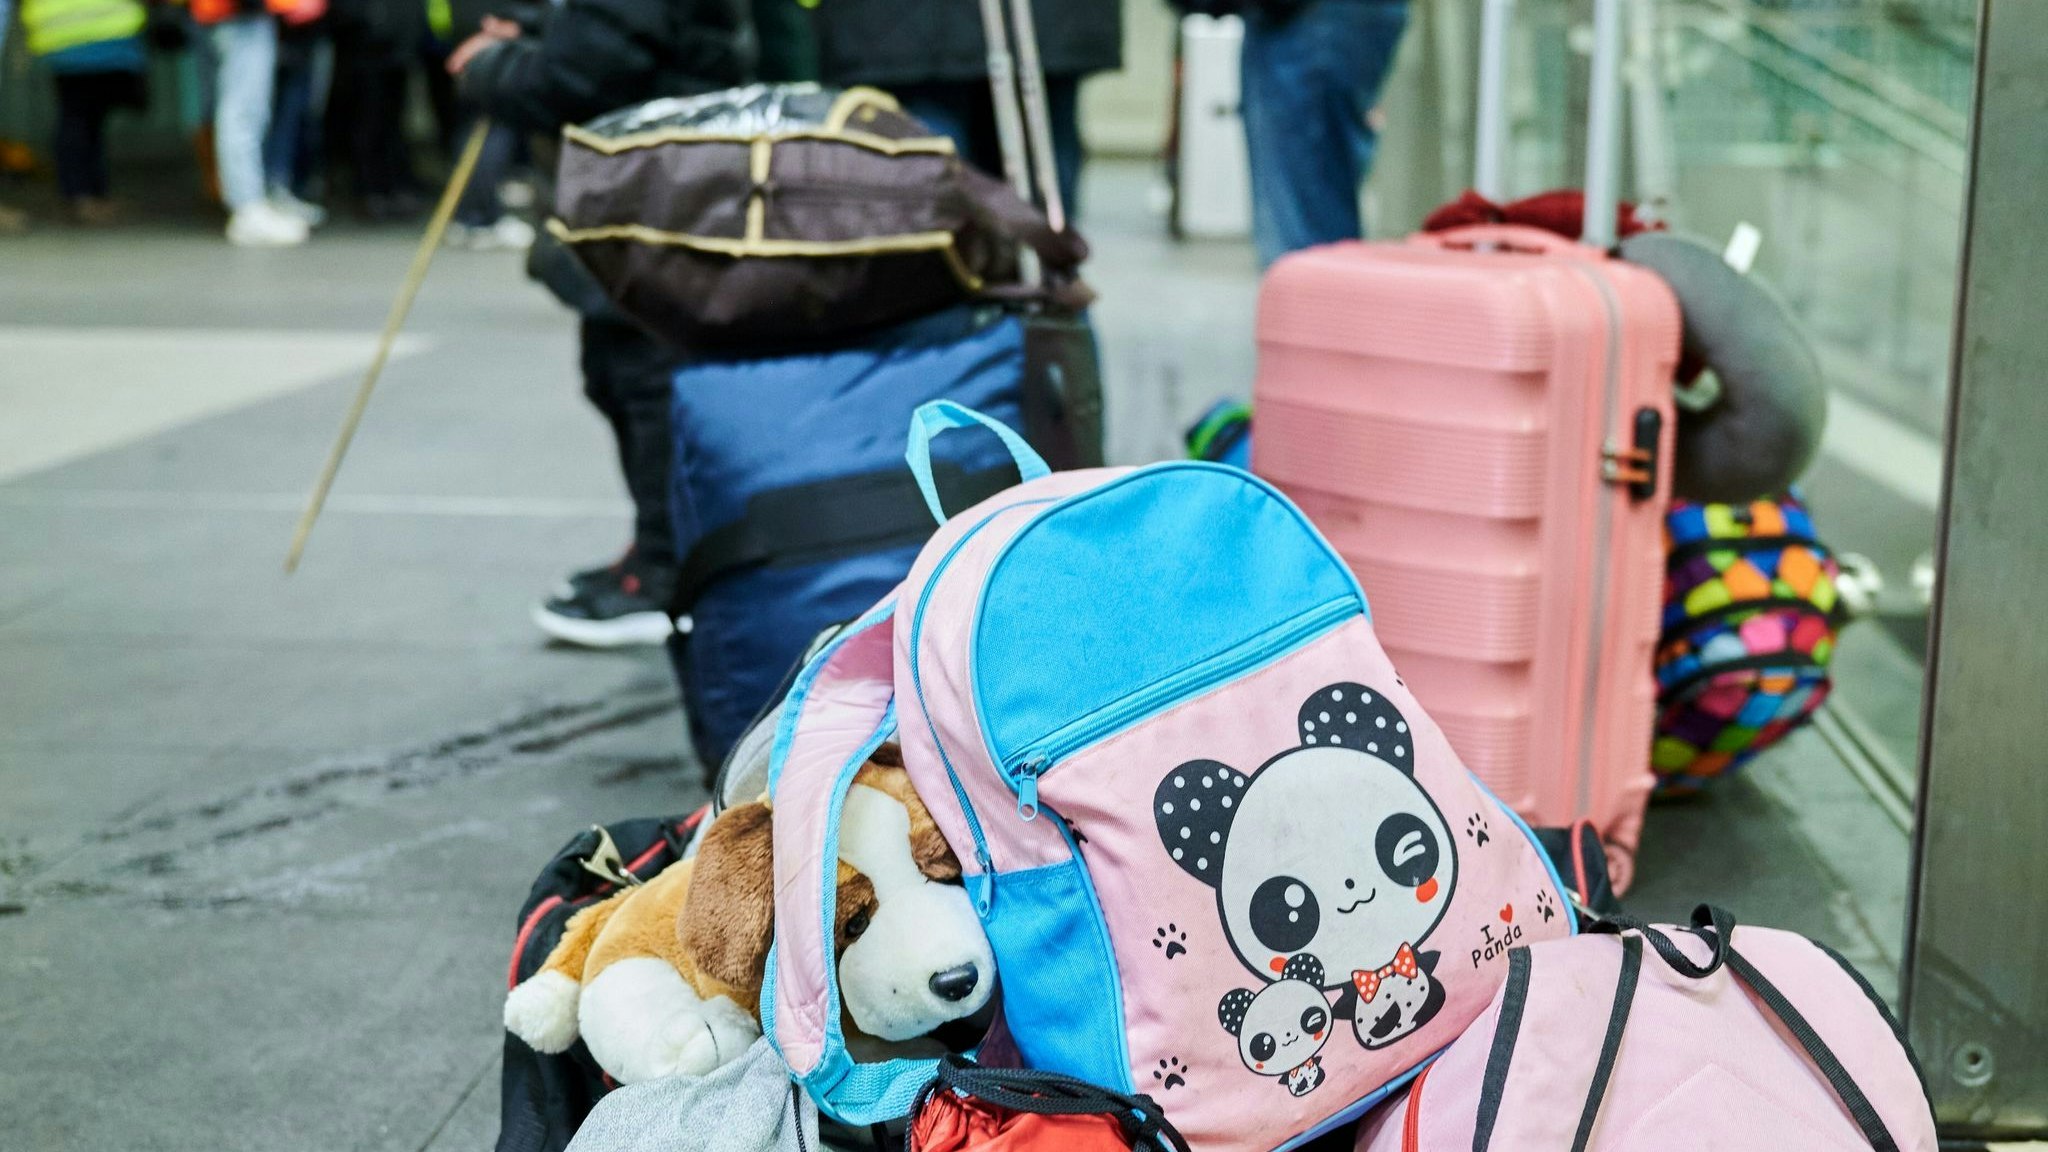 Gepäck von Flüchtlingen im Berliner Hauptbahnhof. Seit Beginn des russischen Angriffs auf die Ukraine sind Tausende Kriegsflüchtlinge nach Deutschland gekommen. Foto: dpa/Riedl